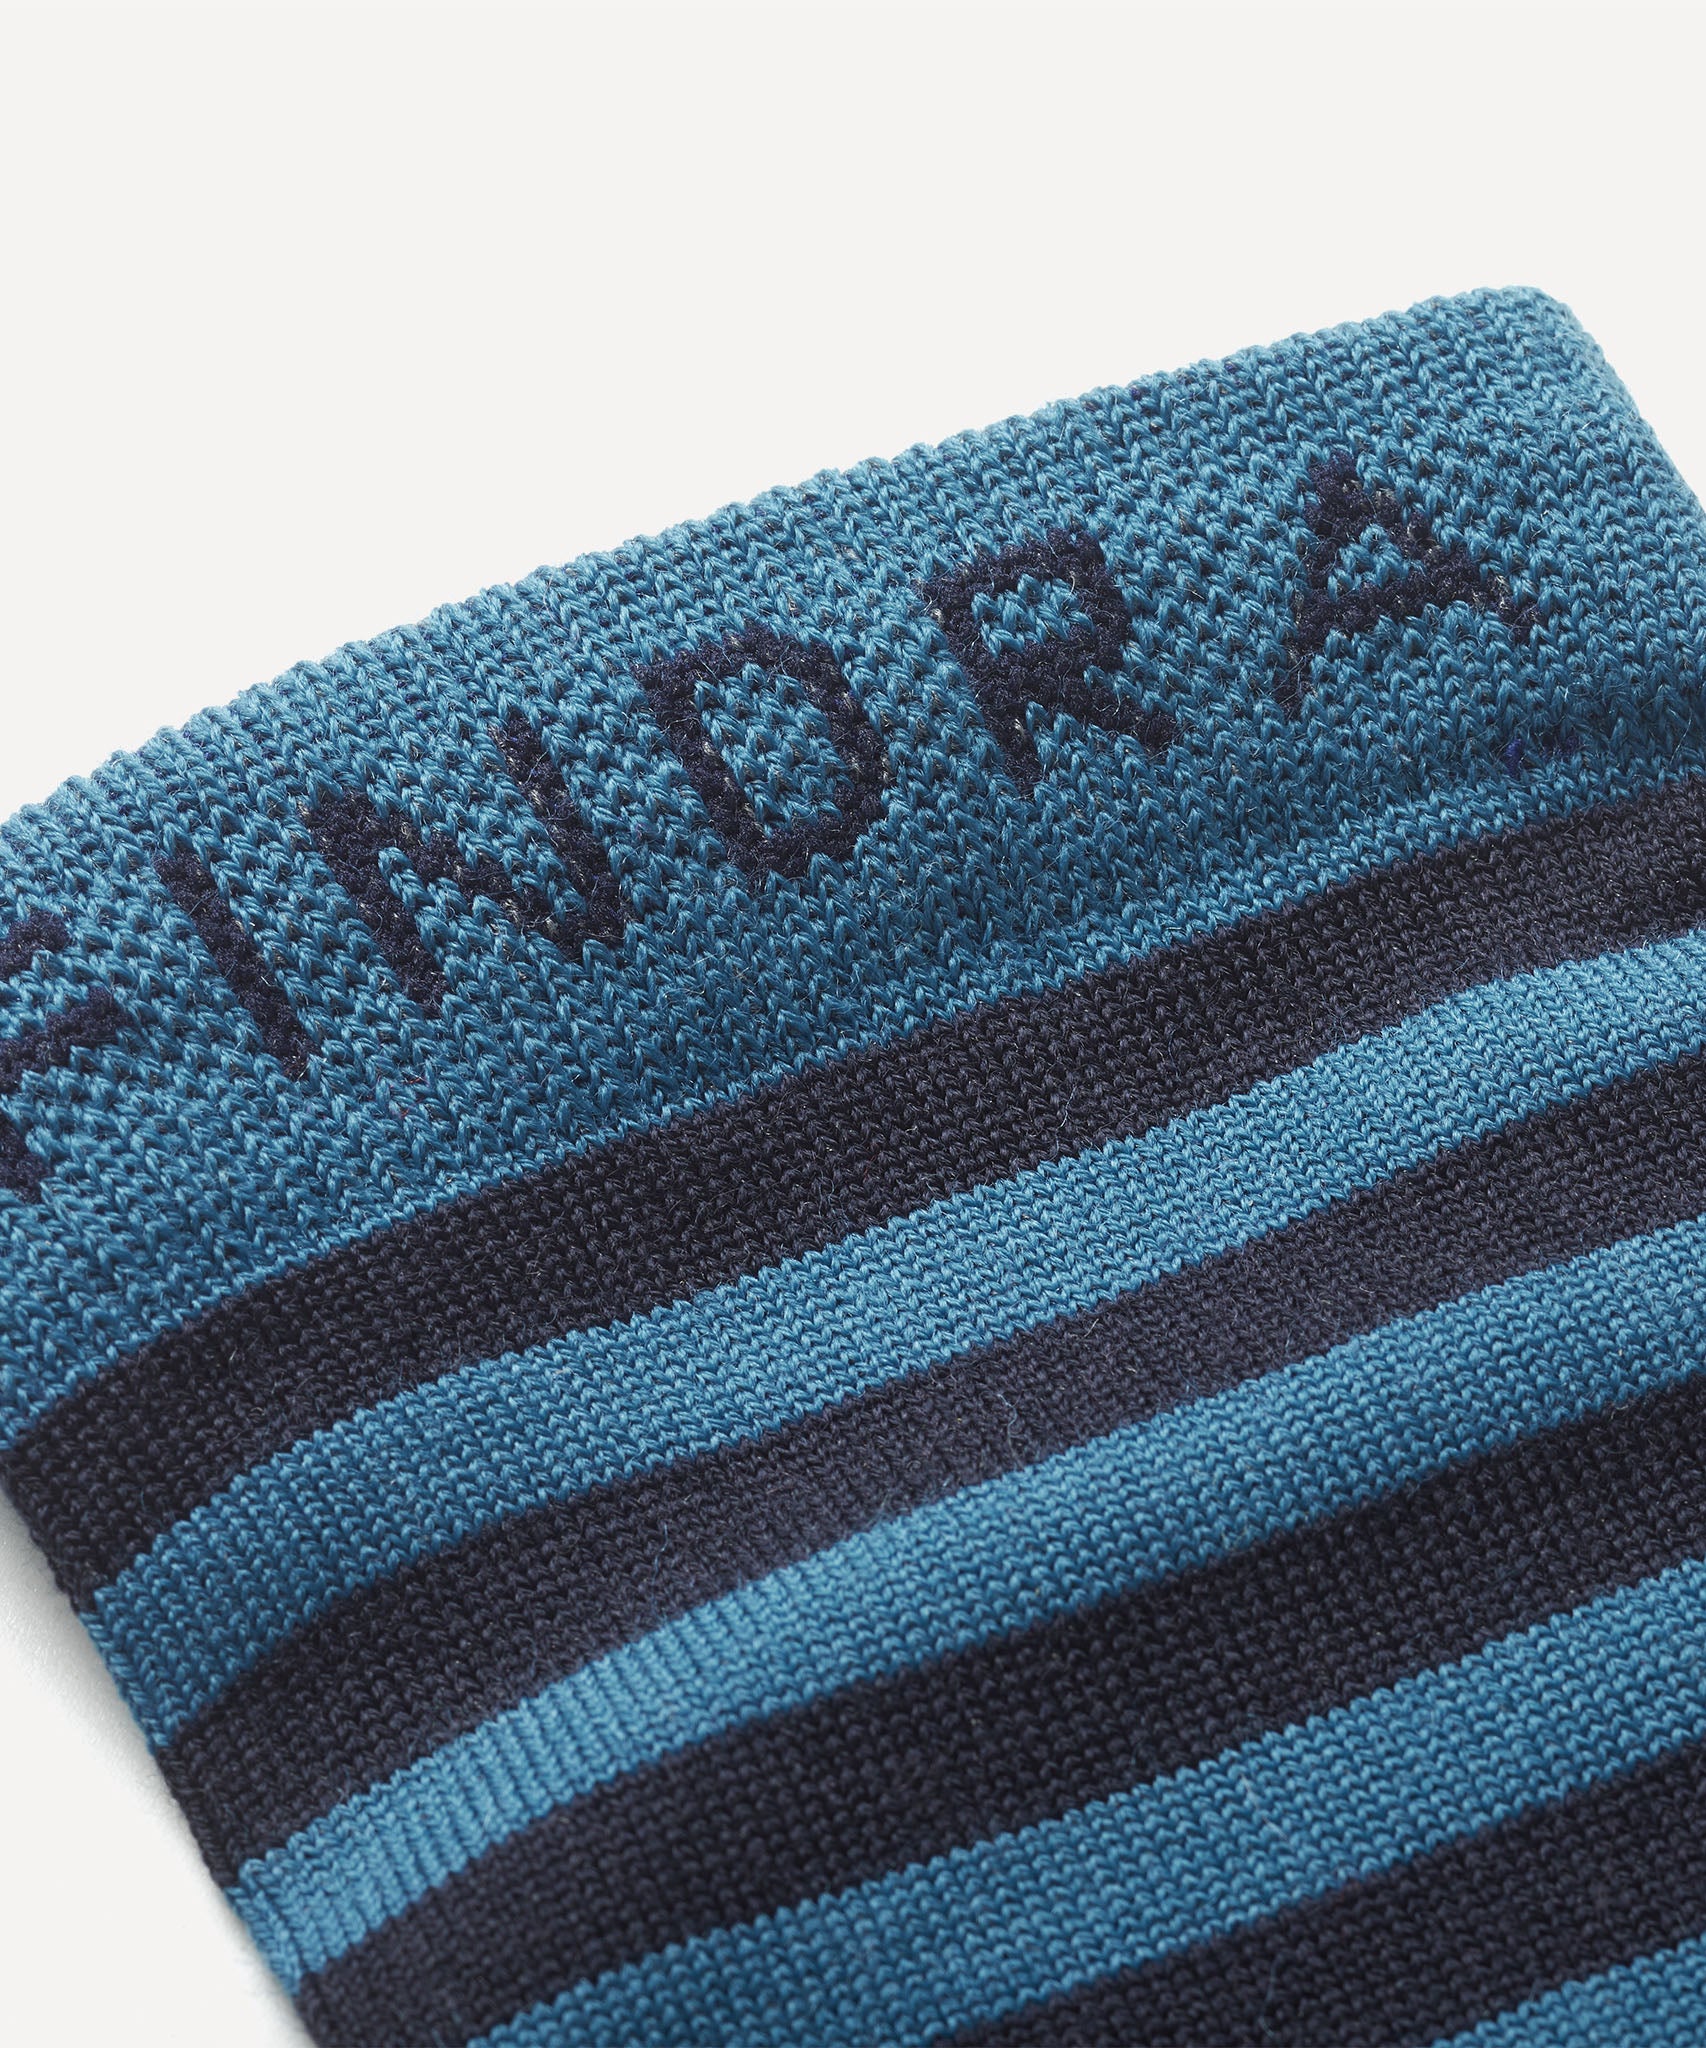 FINDRA Skye Stripe Merino Socks Teal